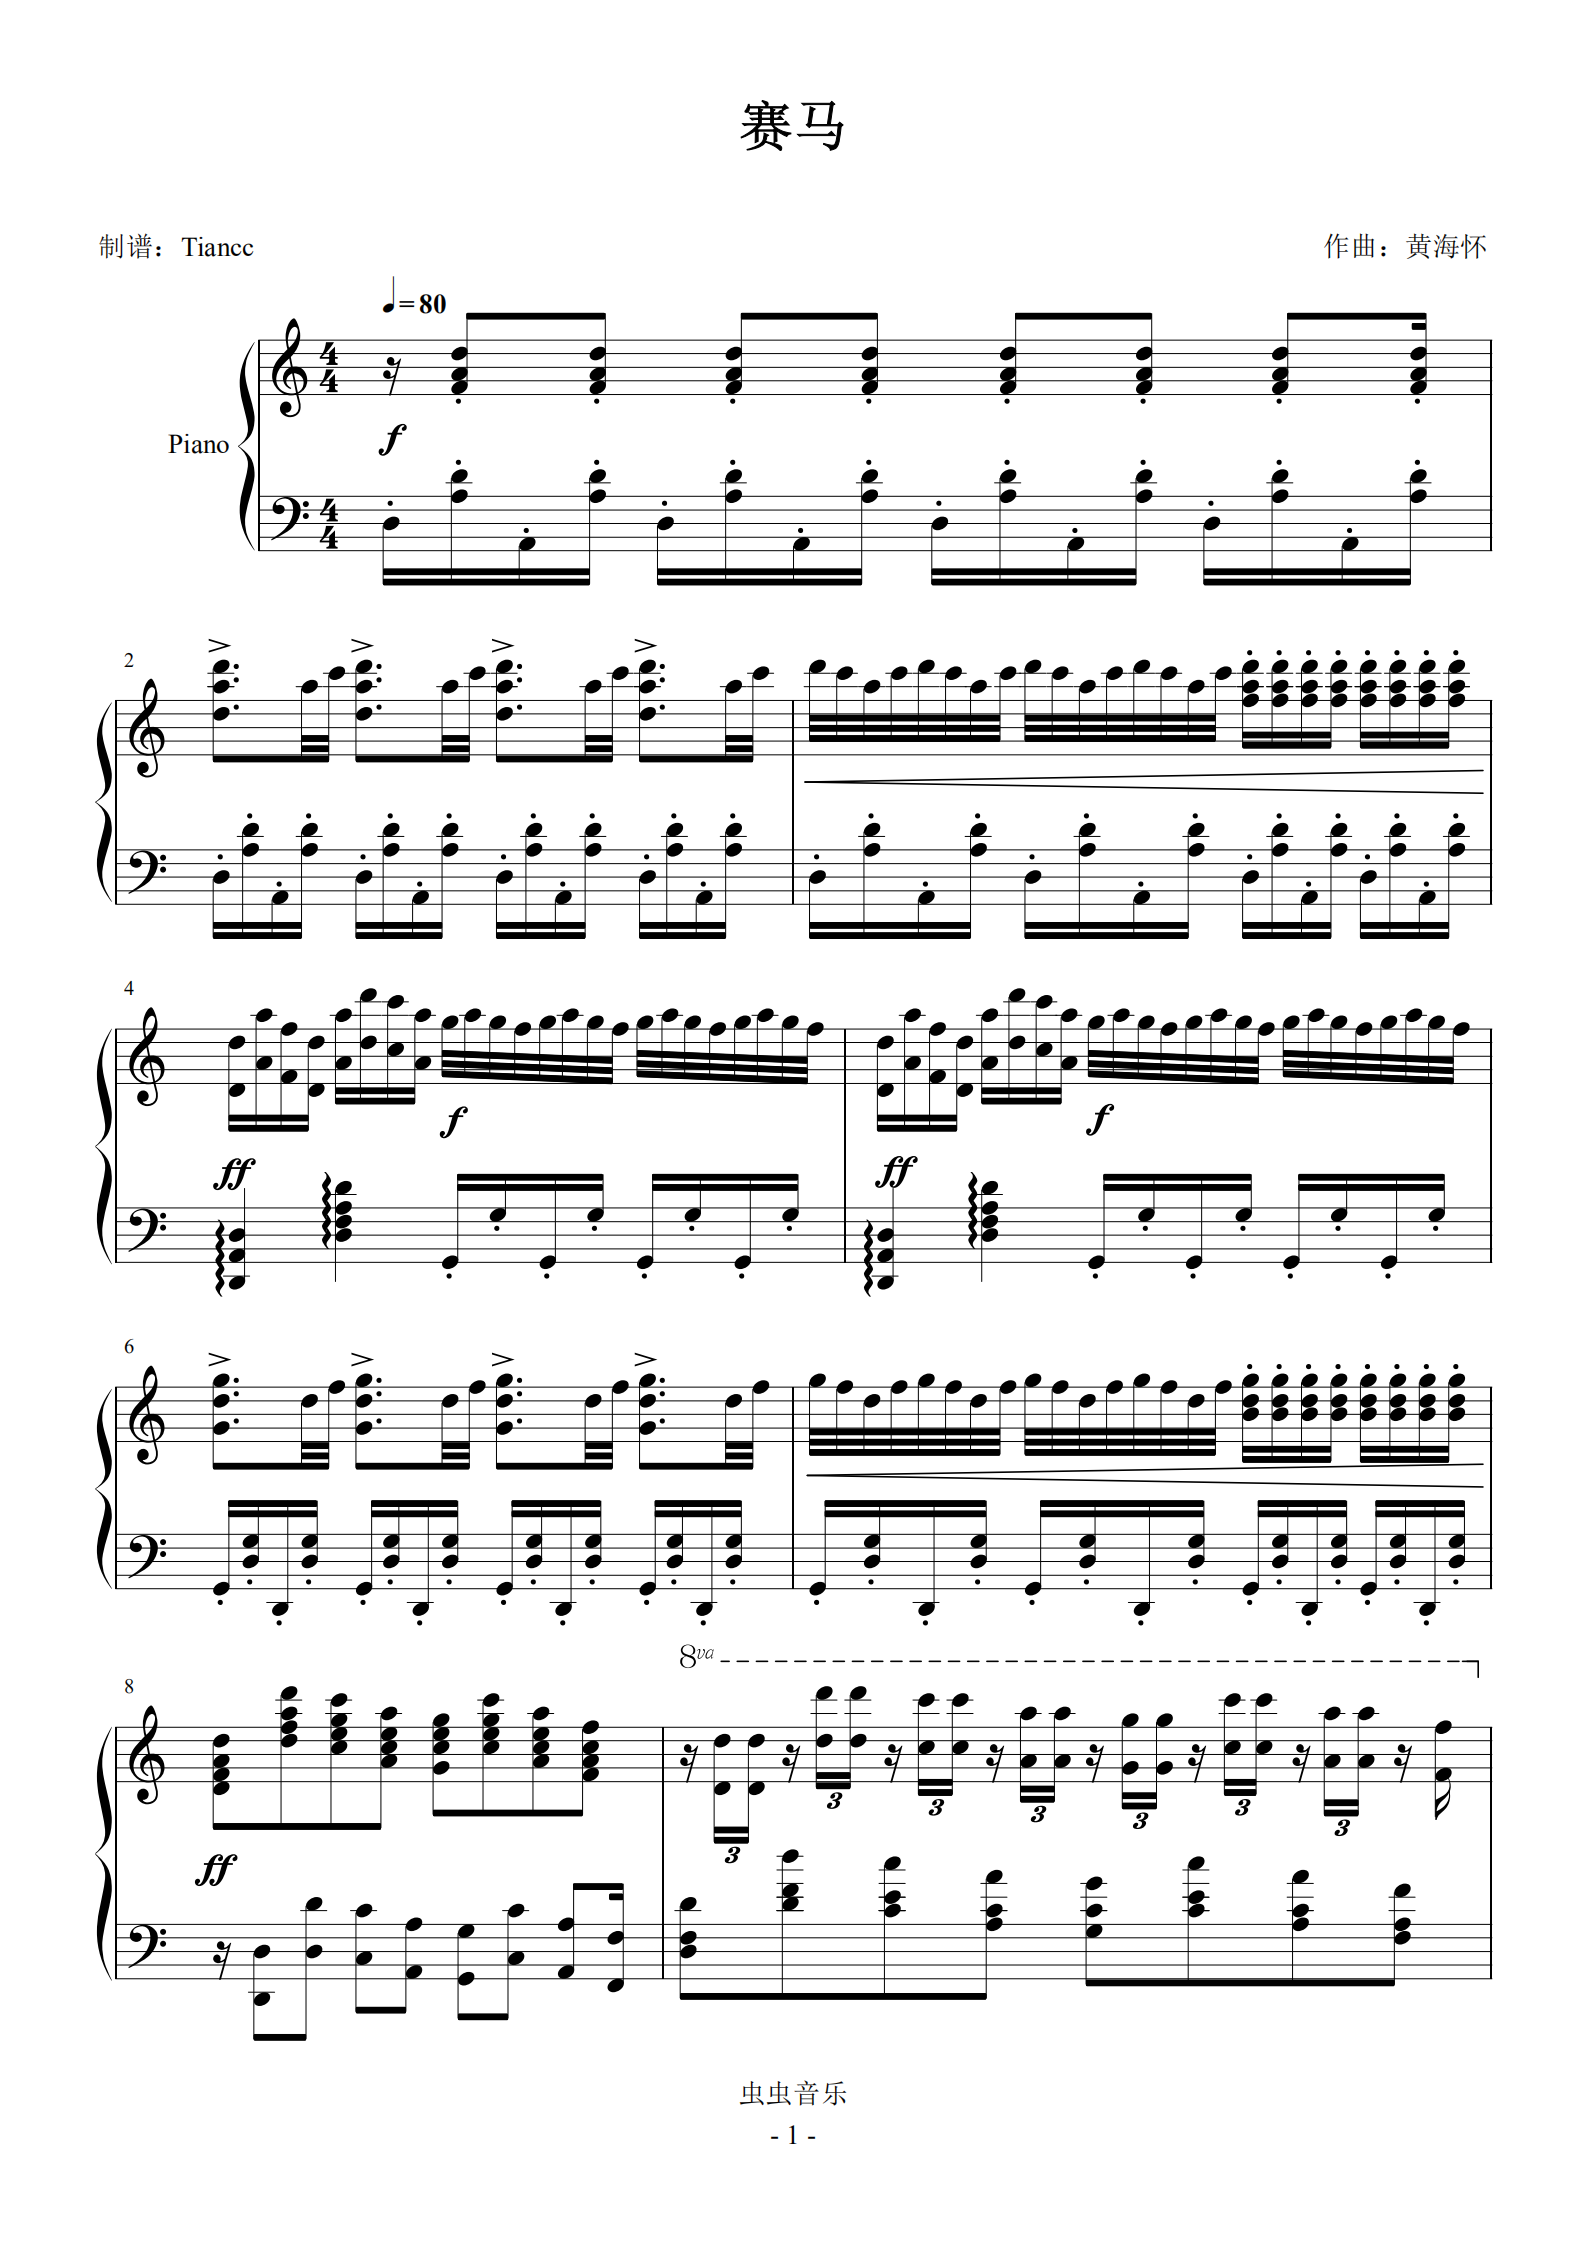 中国名曲《赛马》钢琴谱 - 打谱啦